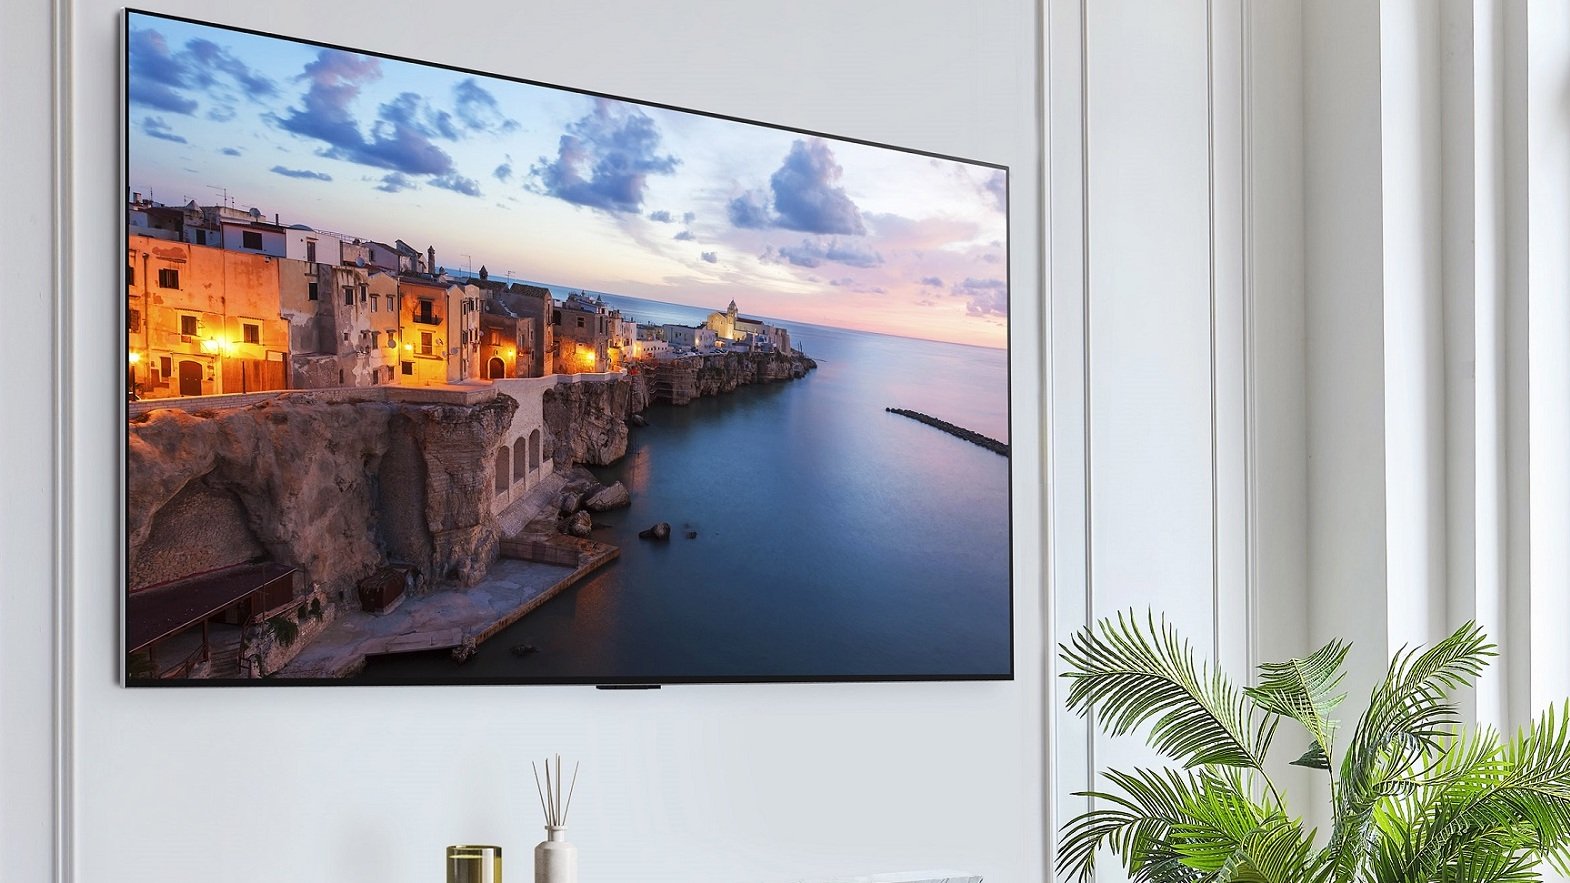 Un pannello LG G3 OLED TV appeso al muro in un soggiorno